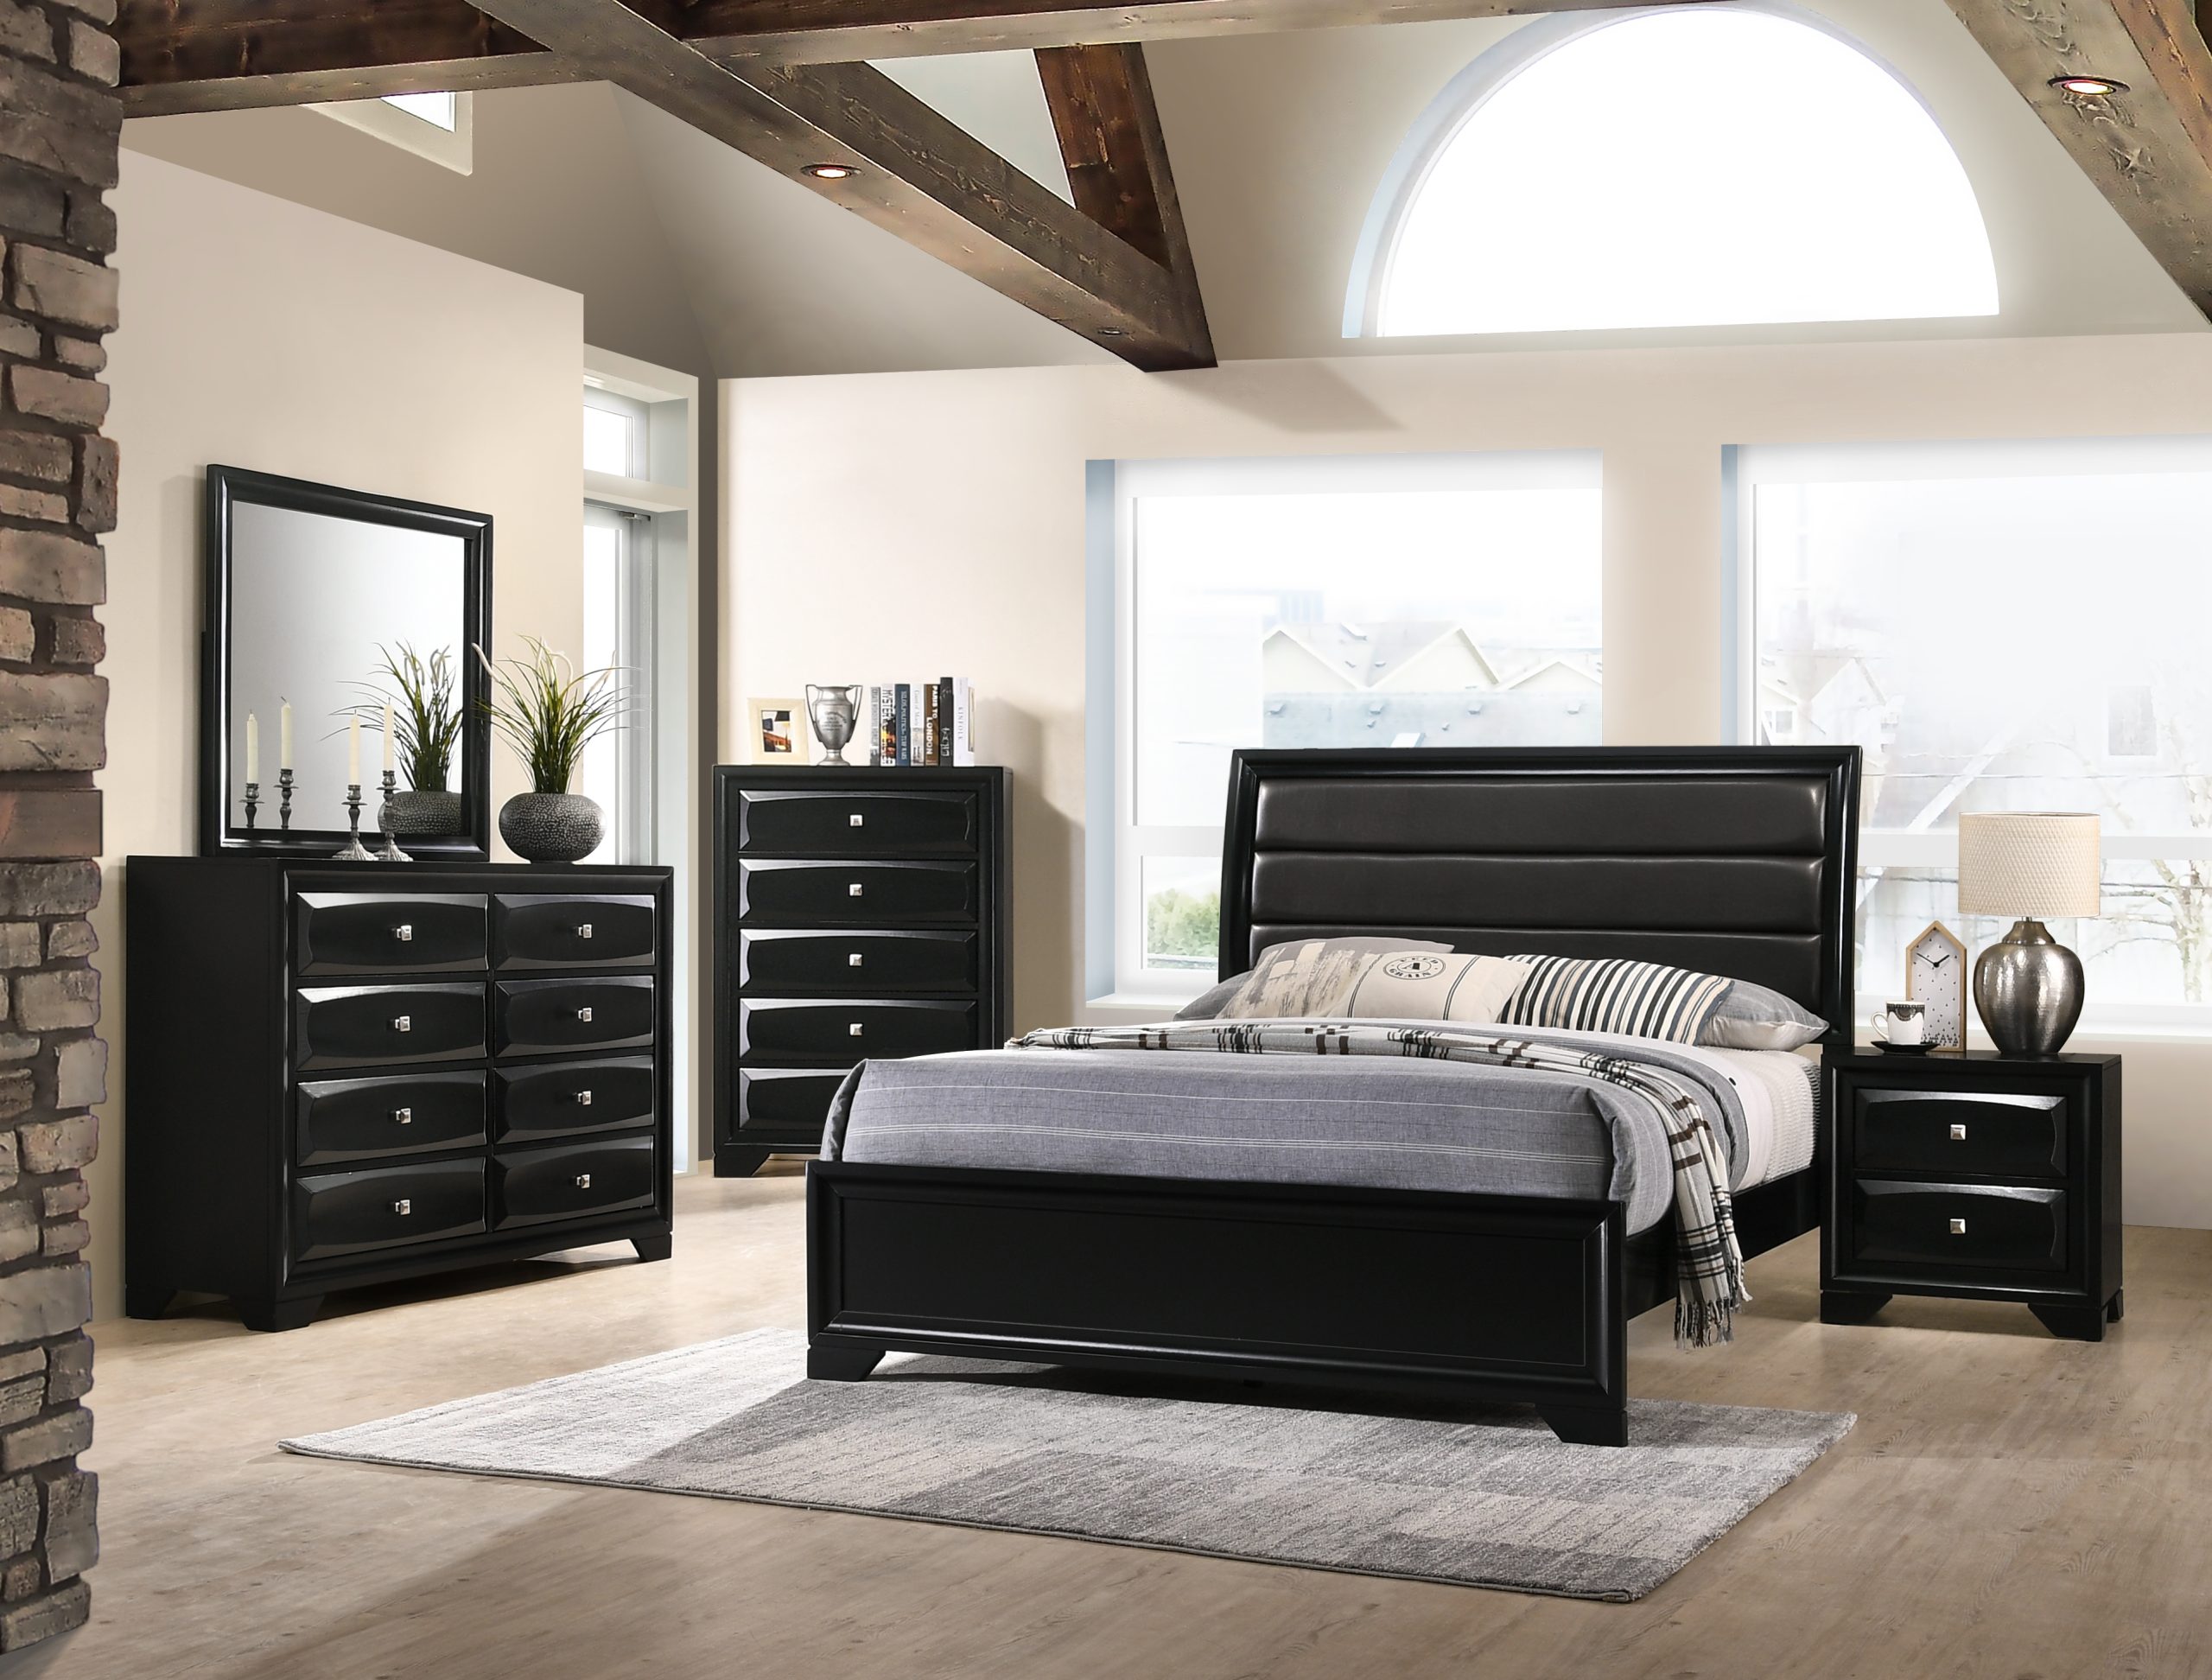 https://furnituredistributioncenter.com/wordpress/wp-content/uploads/2018/12/Monte-Carlo-black-bedroom-set-scaled.jpg